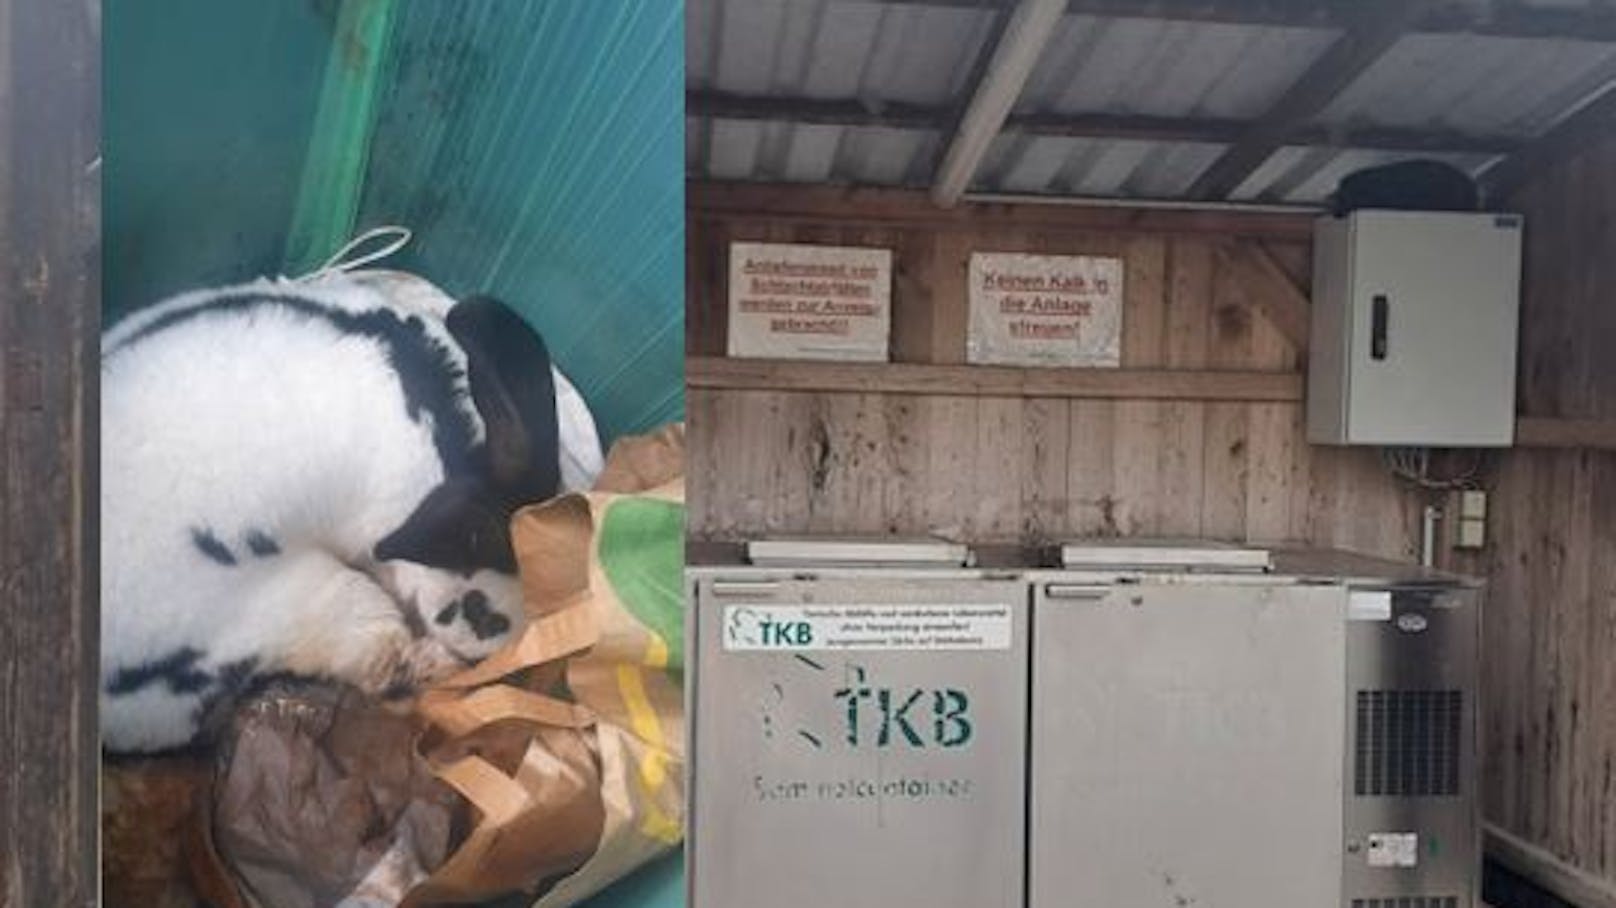 Lebendig entsorgt! Kaninchen hockte in Tierkadaverbox